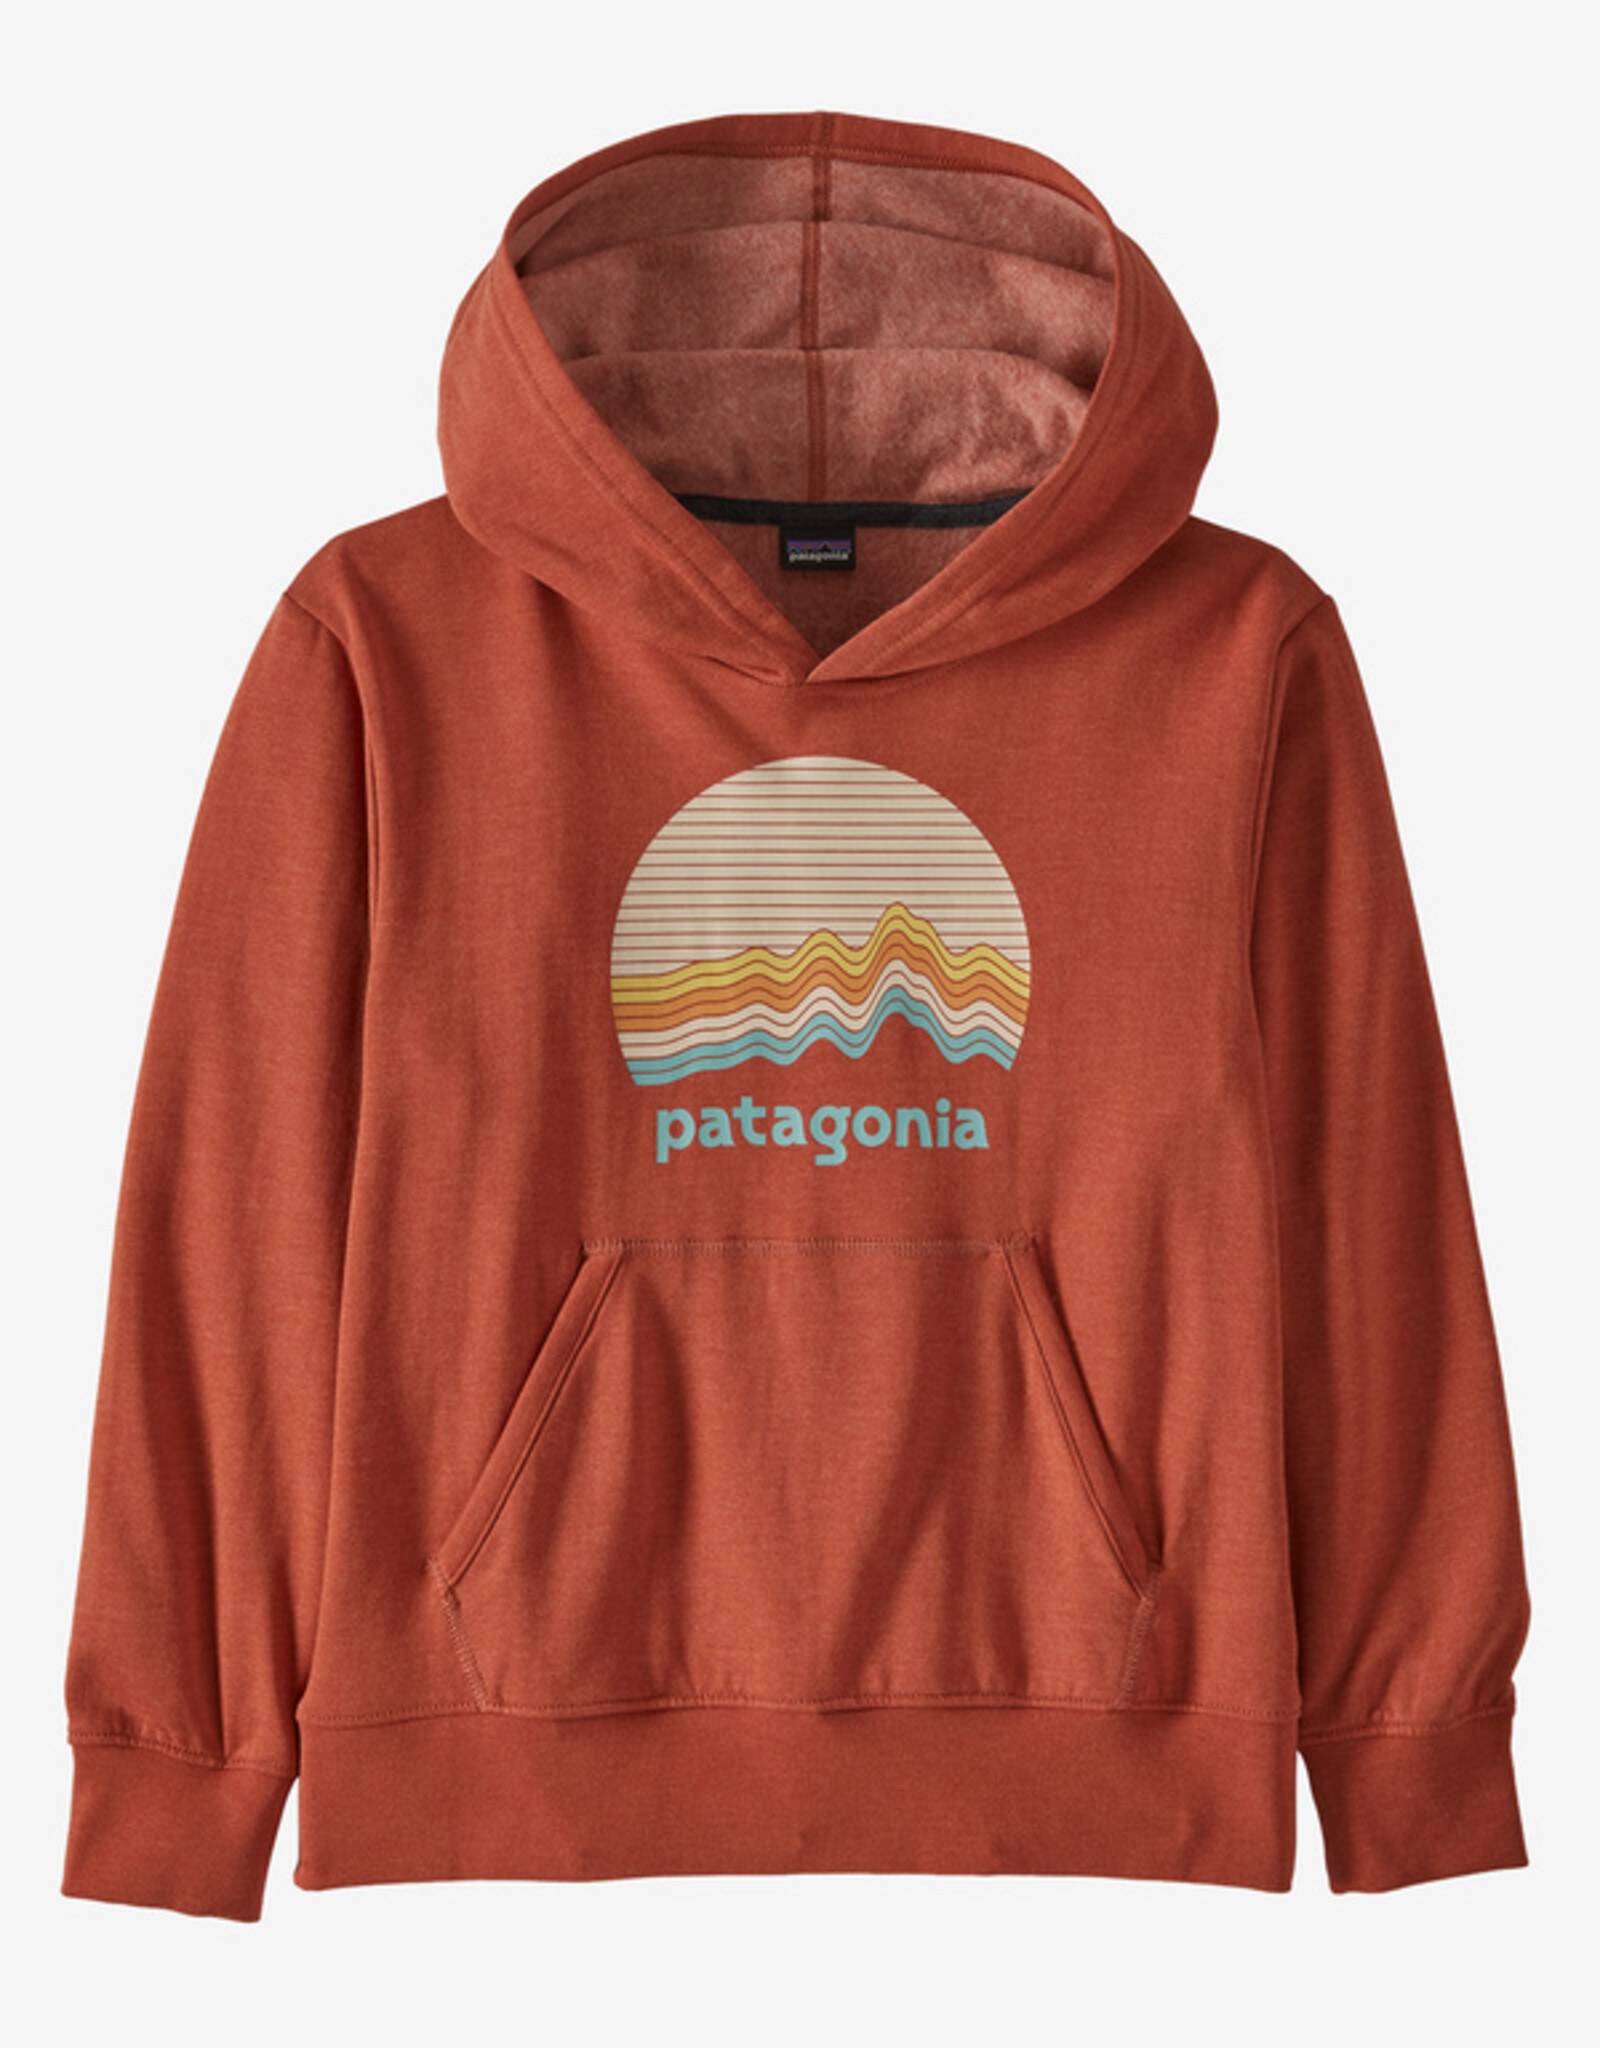 Patagonia Patagonia Kids Lightweight Graphic Hoody Sweatshirt